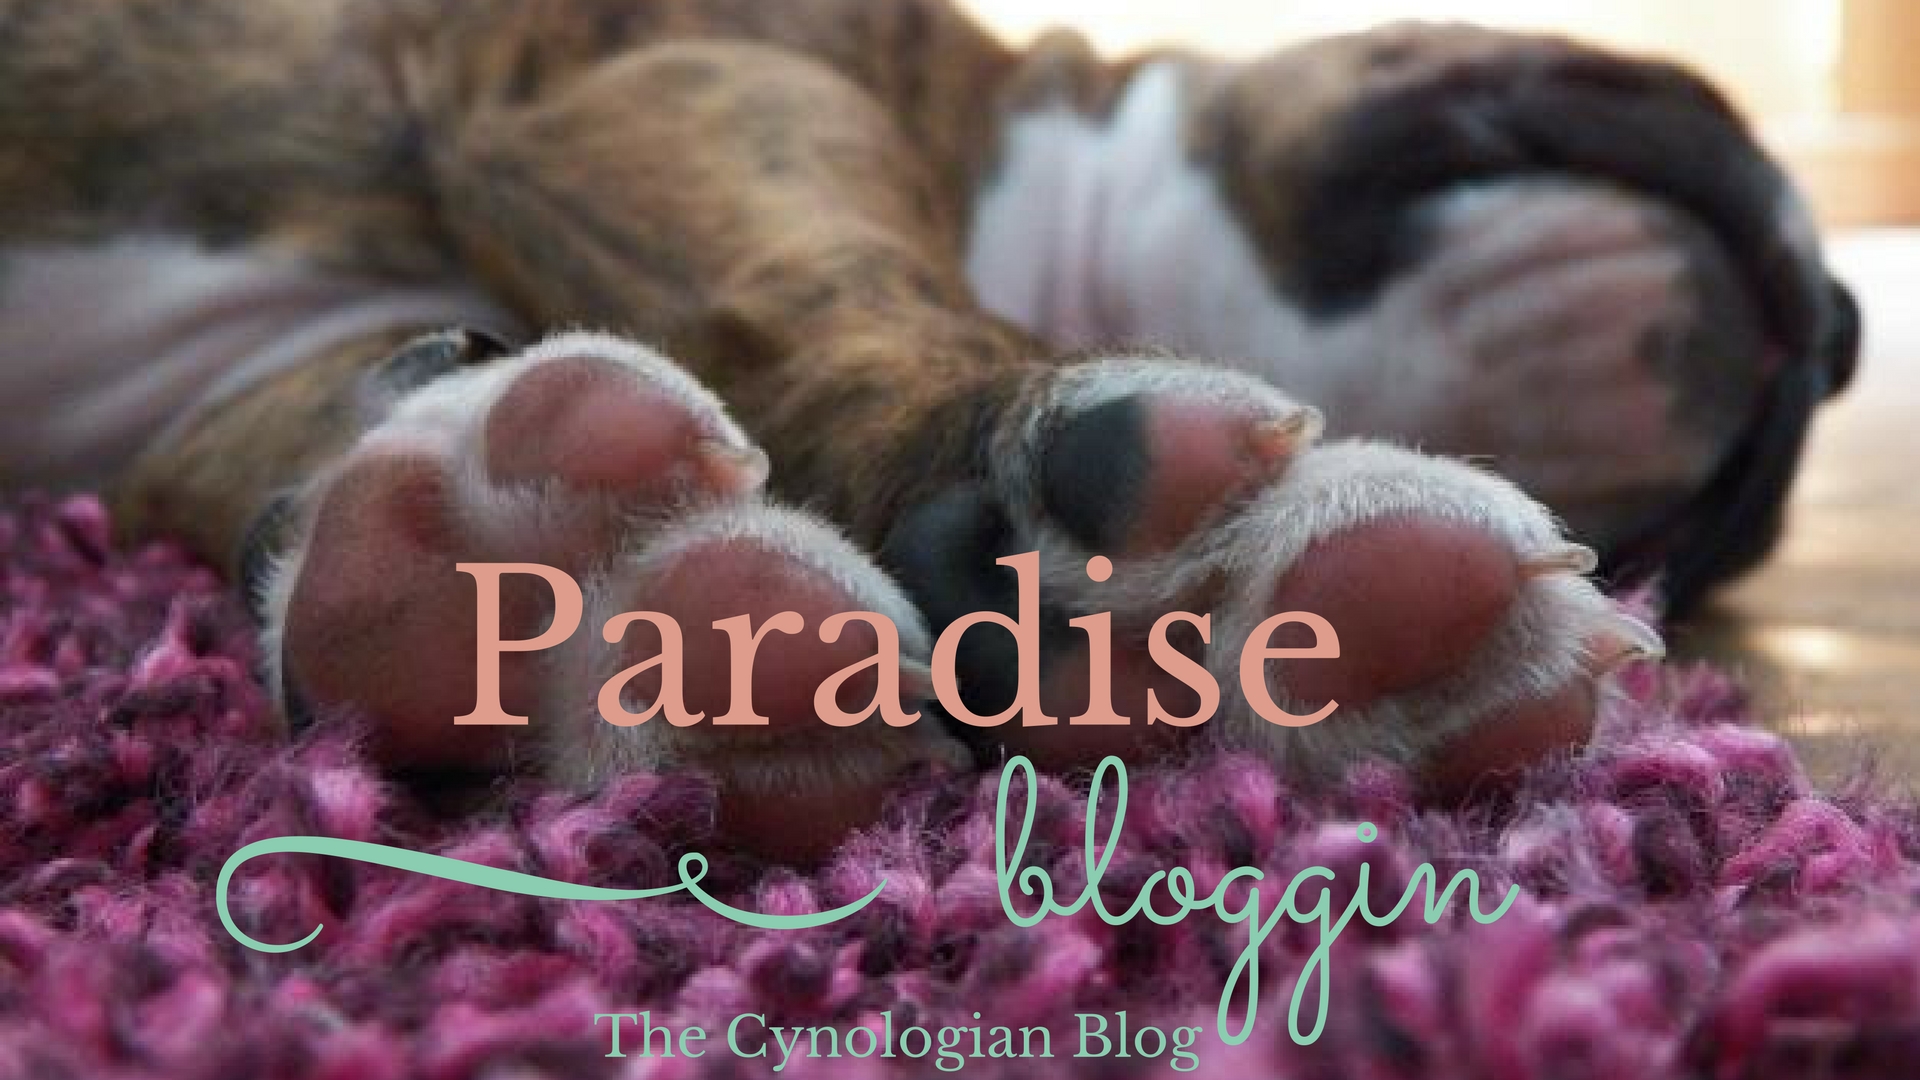 Paradise bloggin